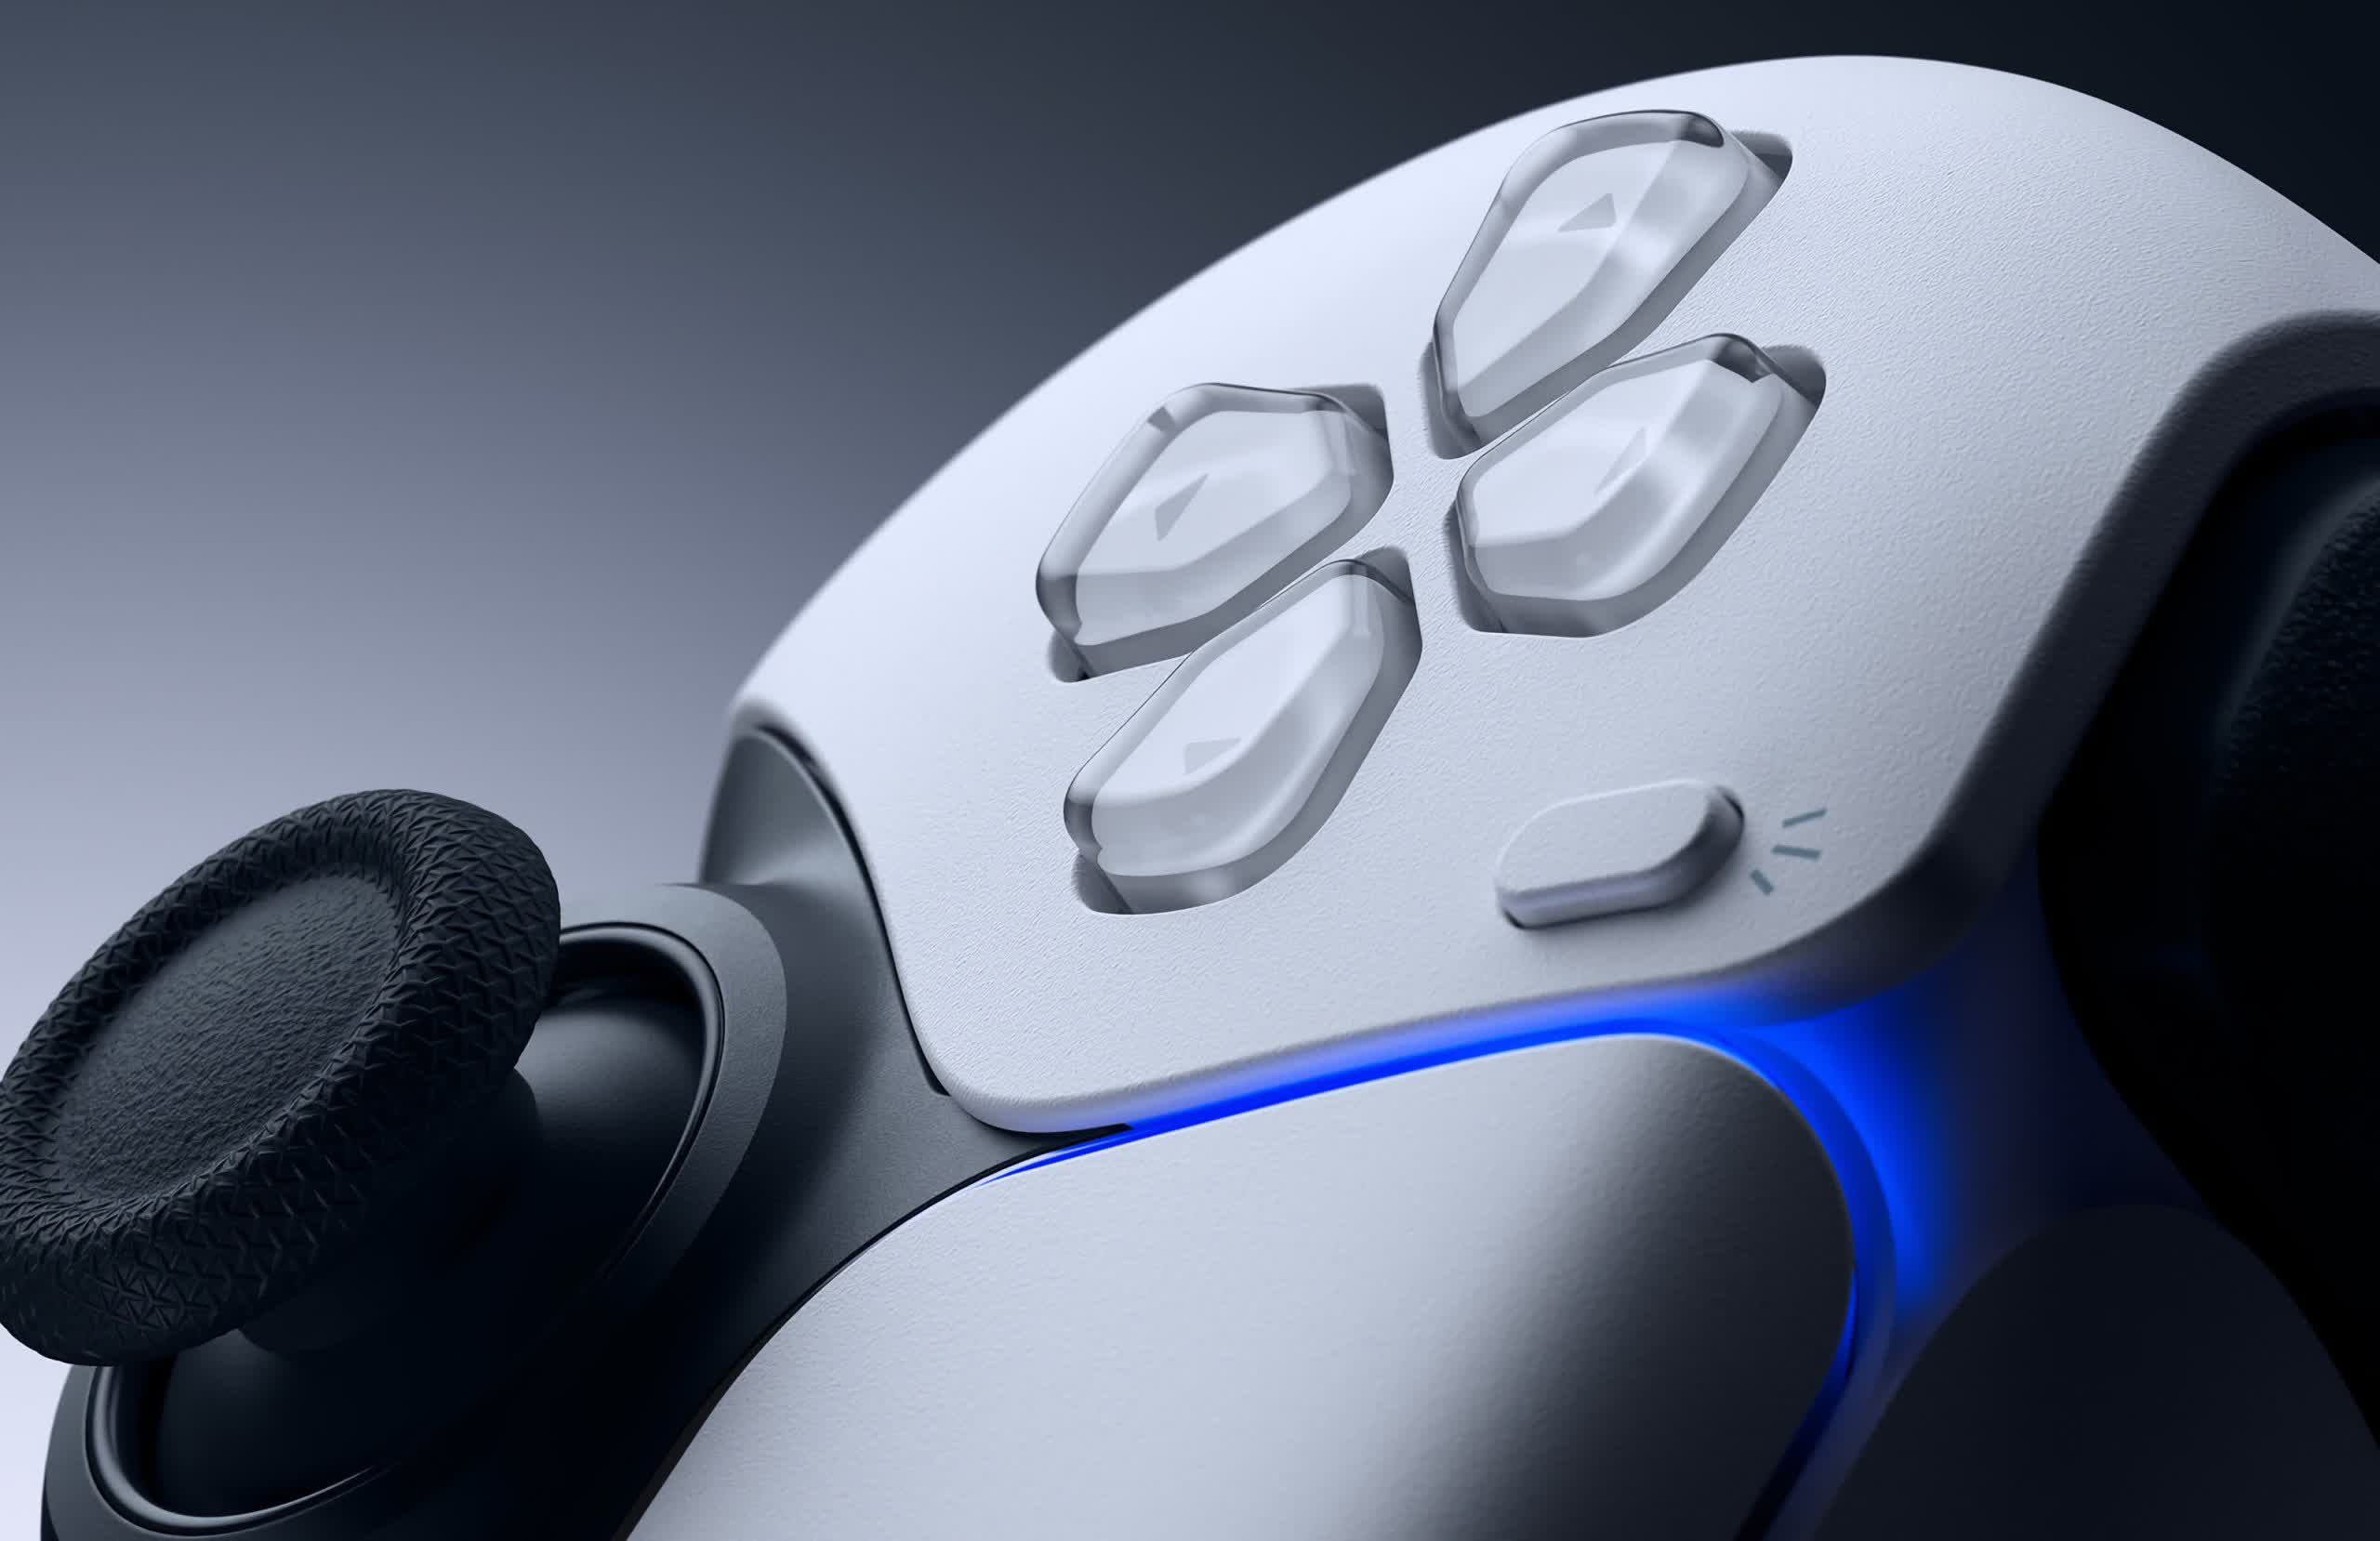 PlayStation 5 : une mise à jour va bientôt lui permettre de